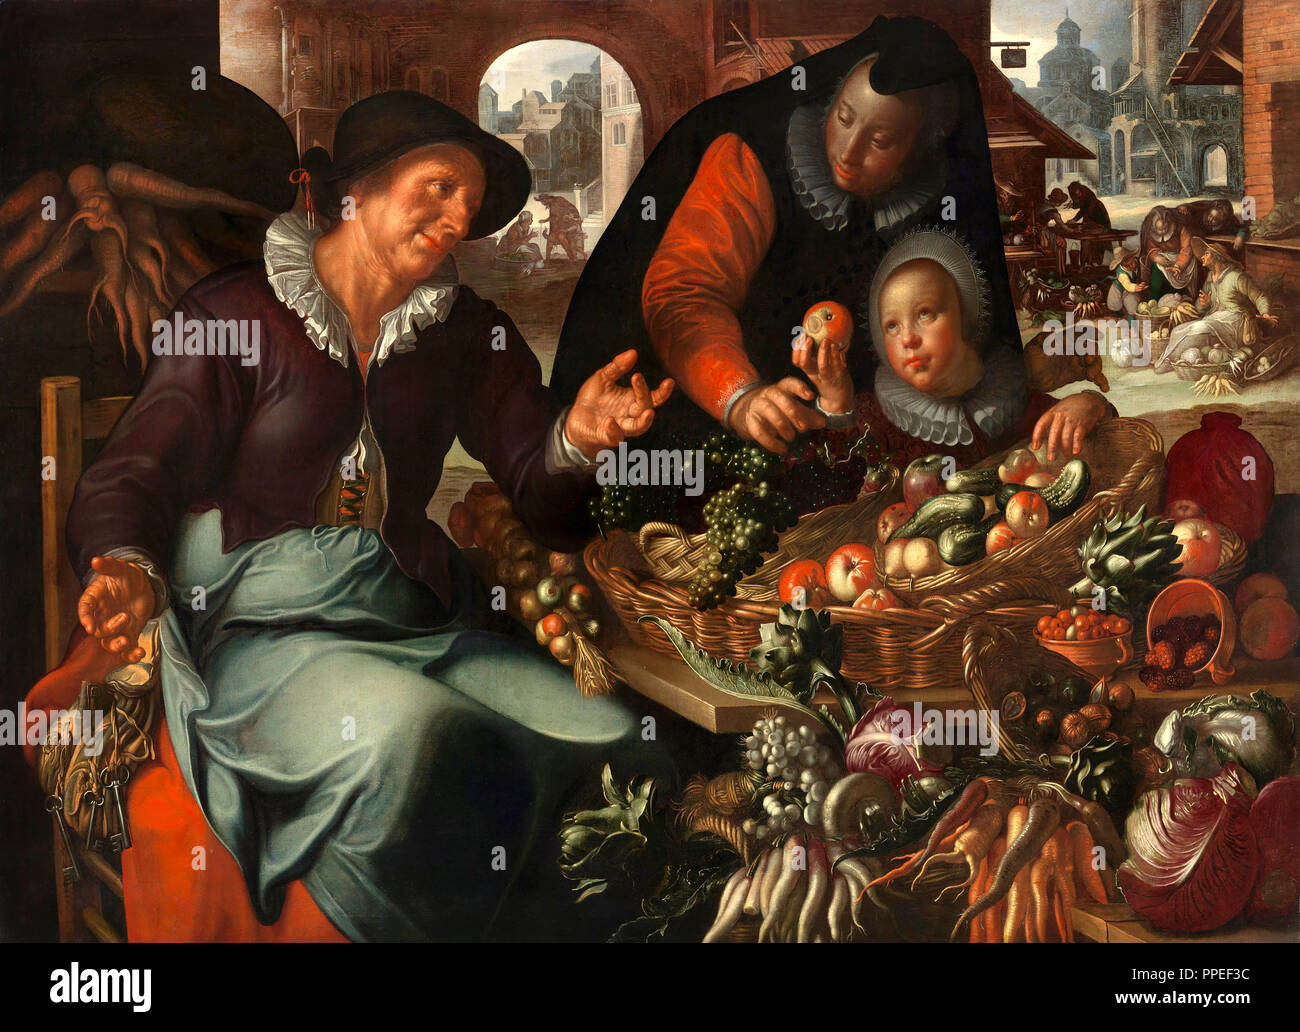 Joachim Wtewael, le vendeur de fruits et légumes. Circa 1618. Huile sur toile. Centraal Museum à Utrecht, Pays-Bas. Banque D'Images